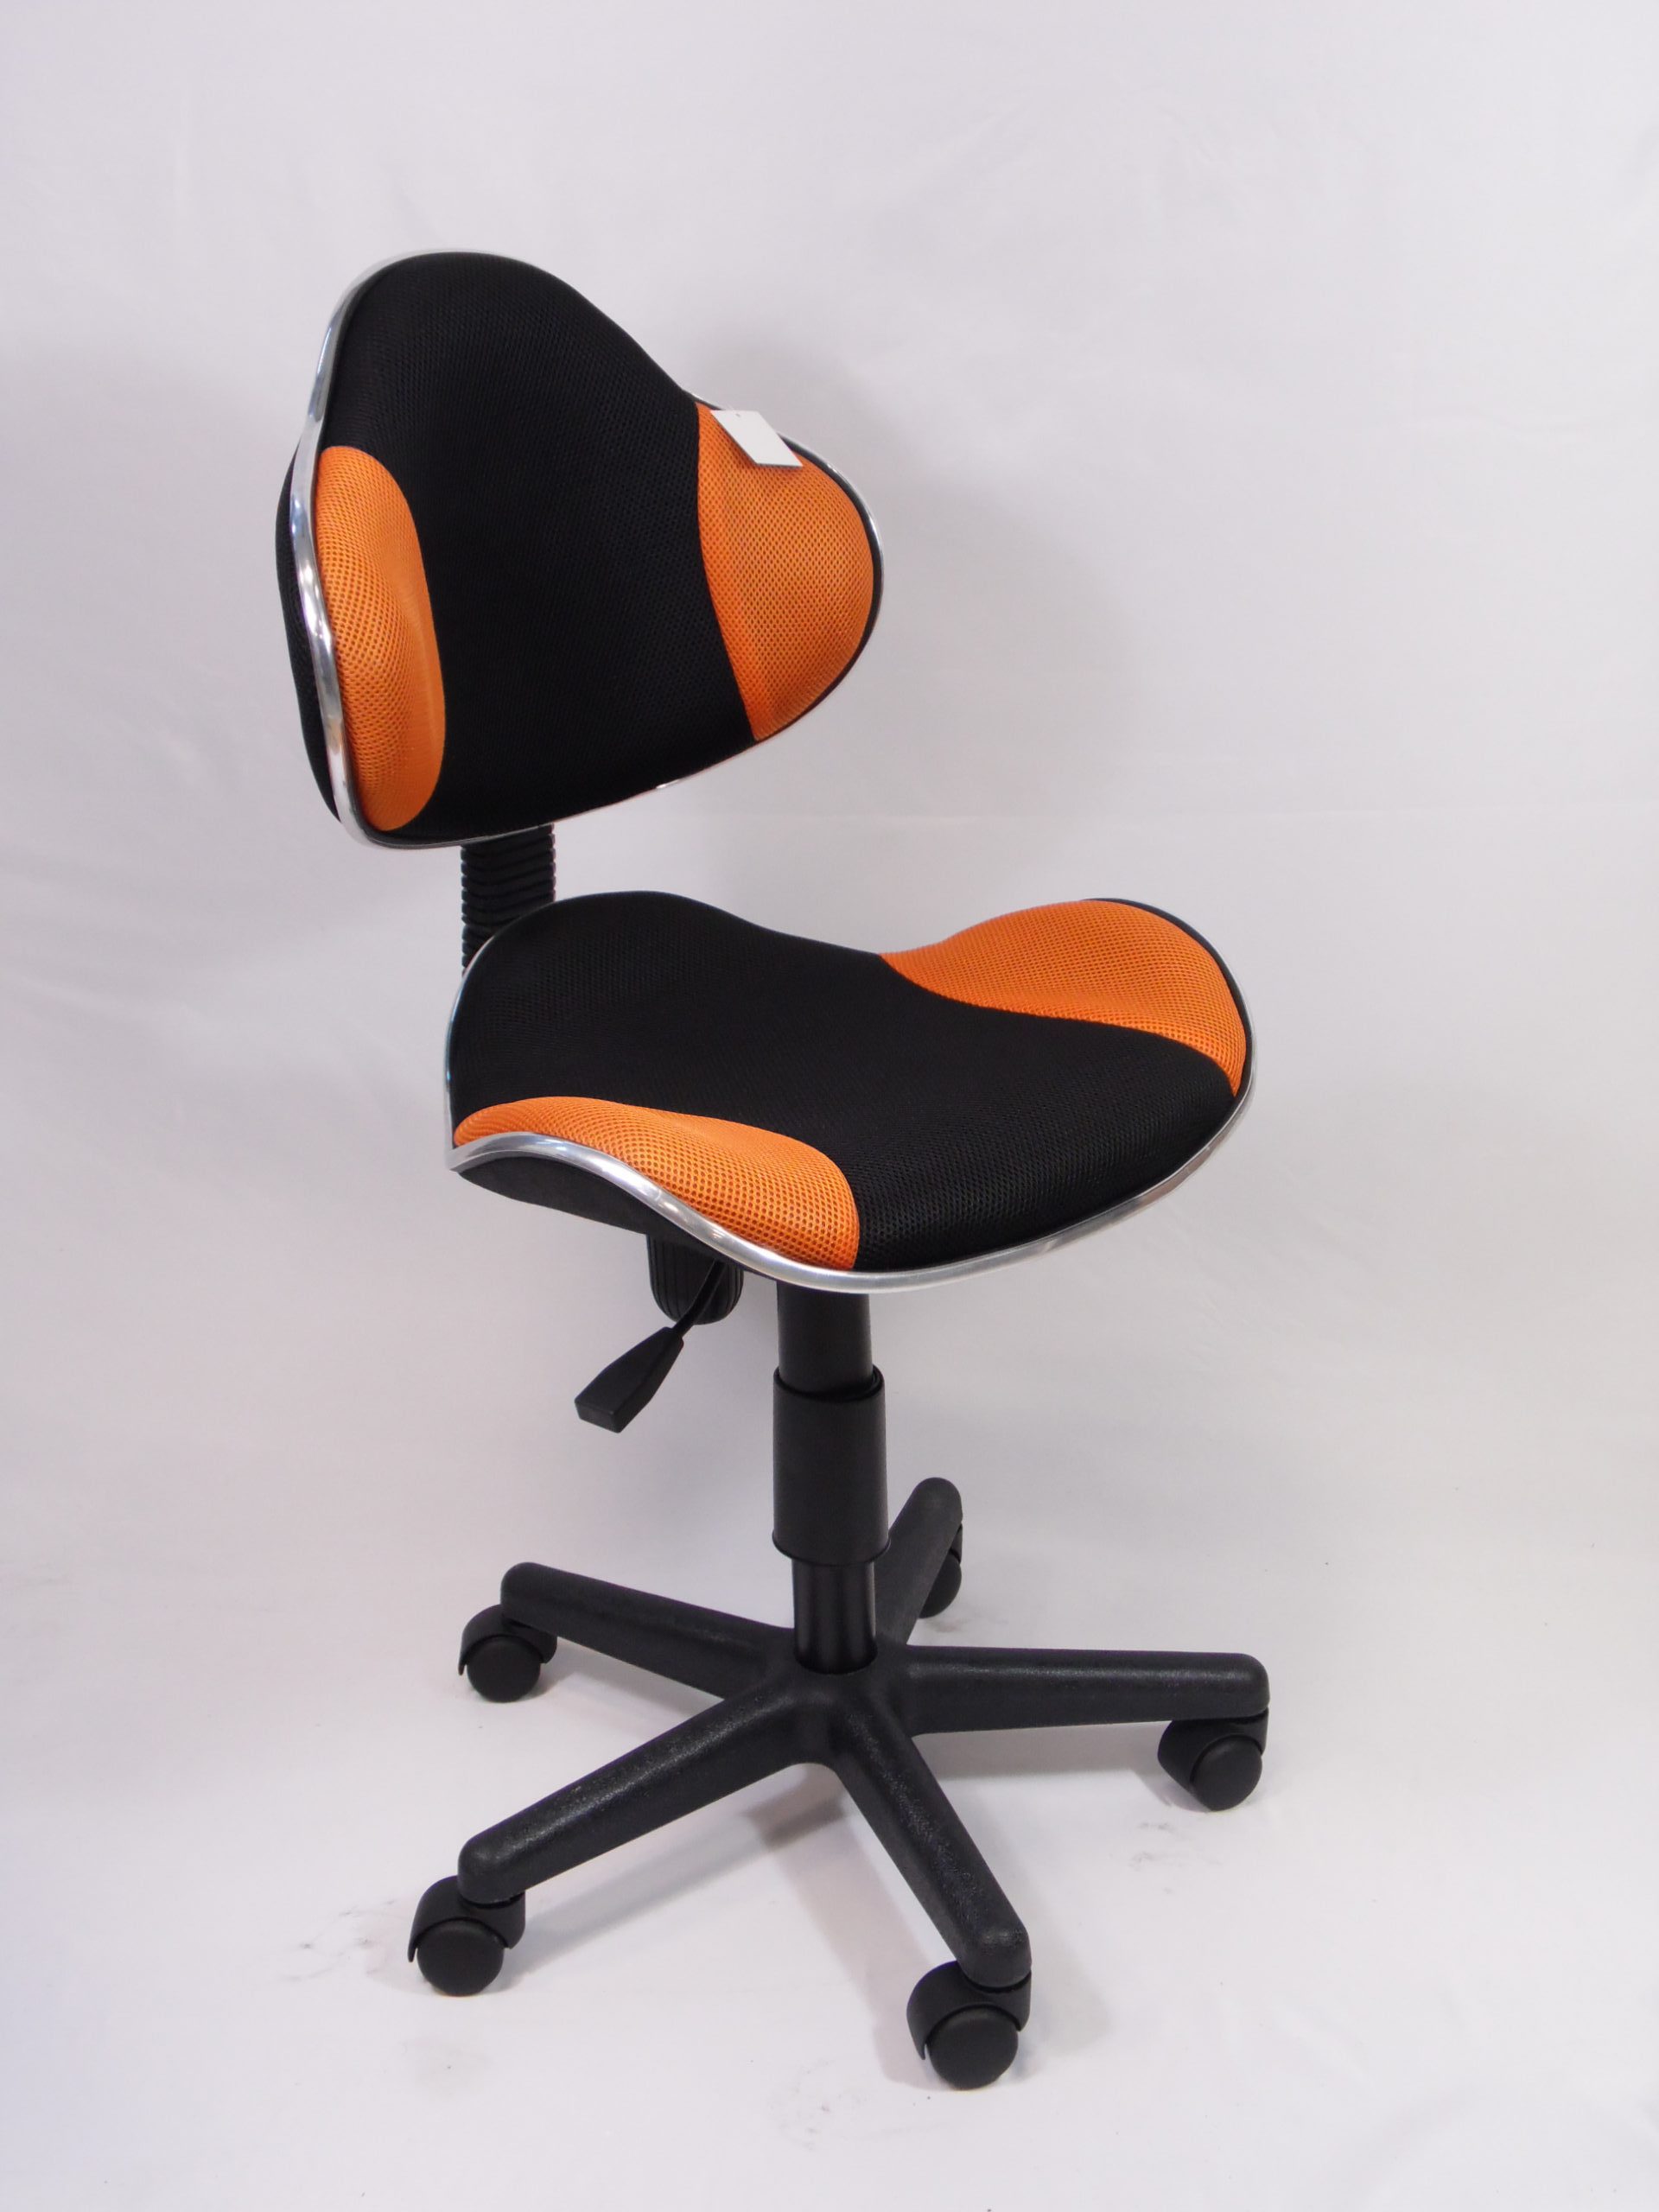 sedia per pc color nero e arancione dimensioni: h max 95 cm x d 55cm, h sedile 54cm x d sedile 48 cm; Materiali: tessuto e plastica